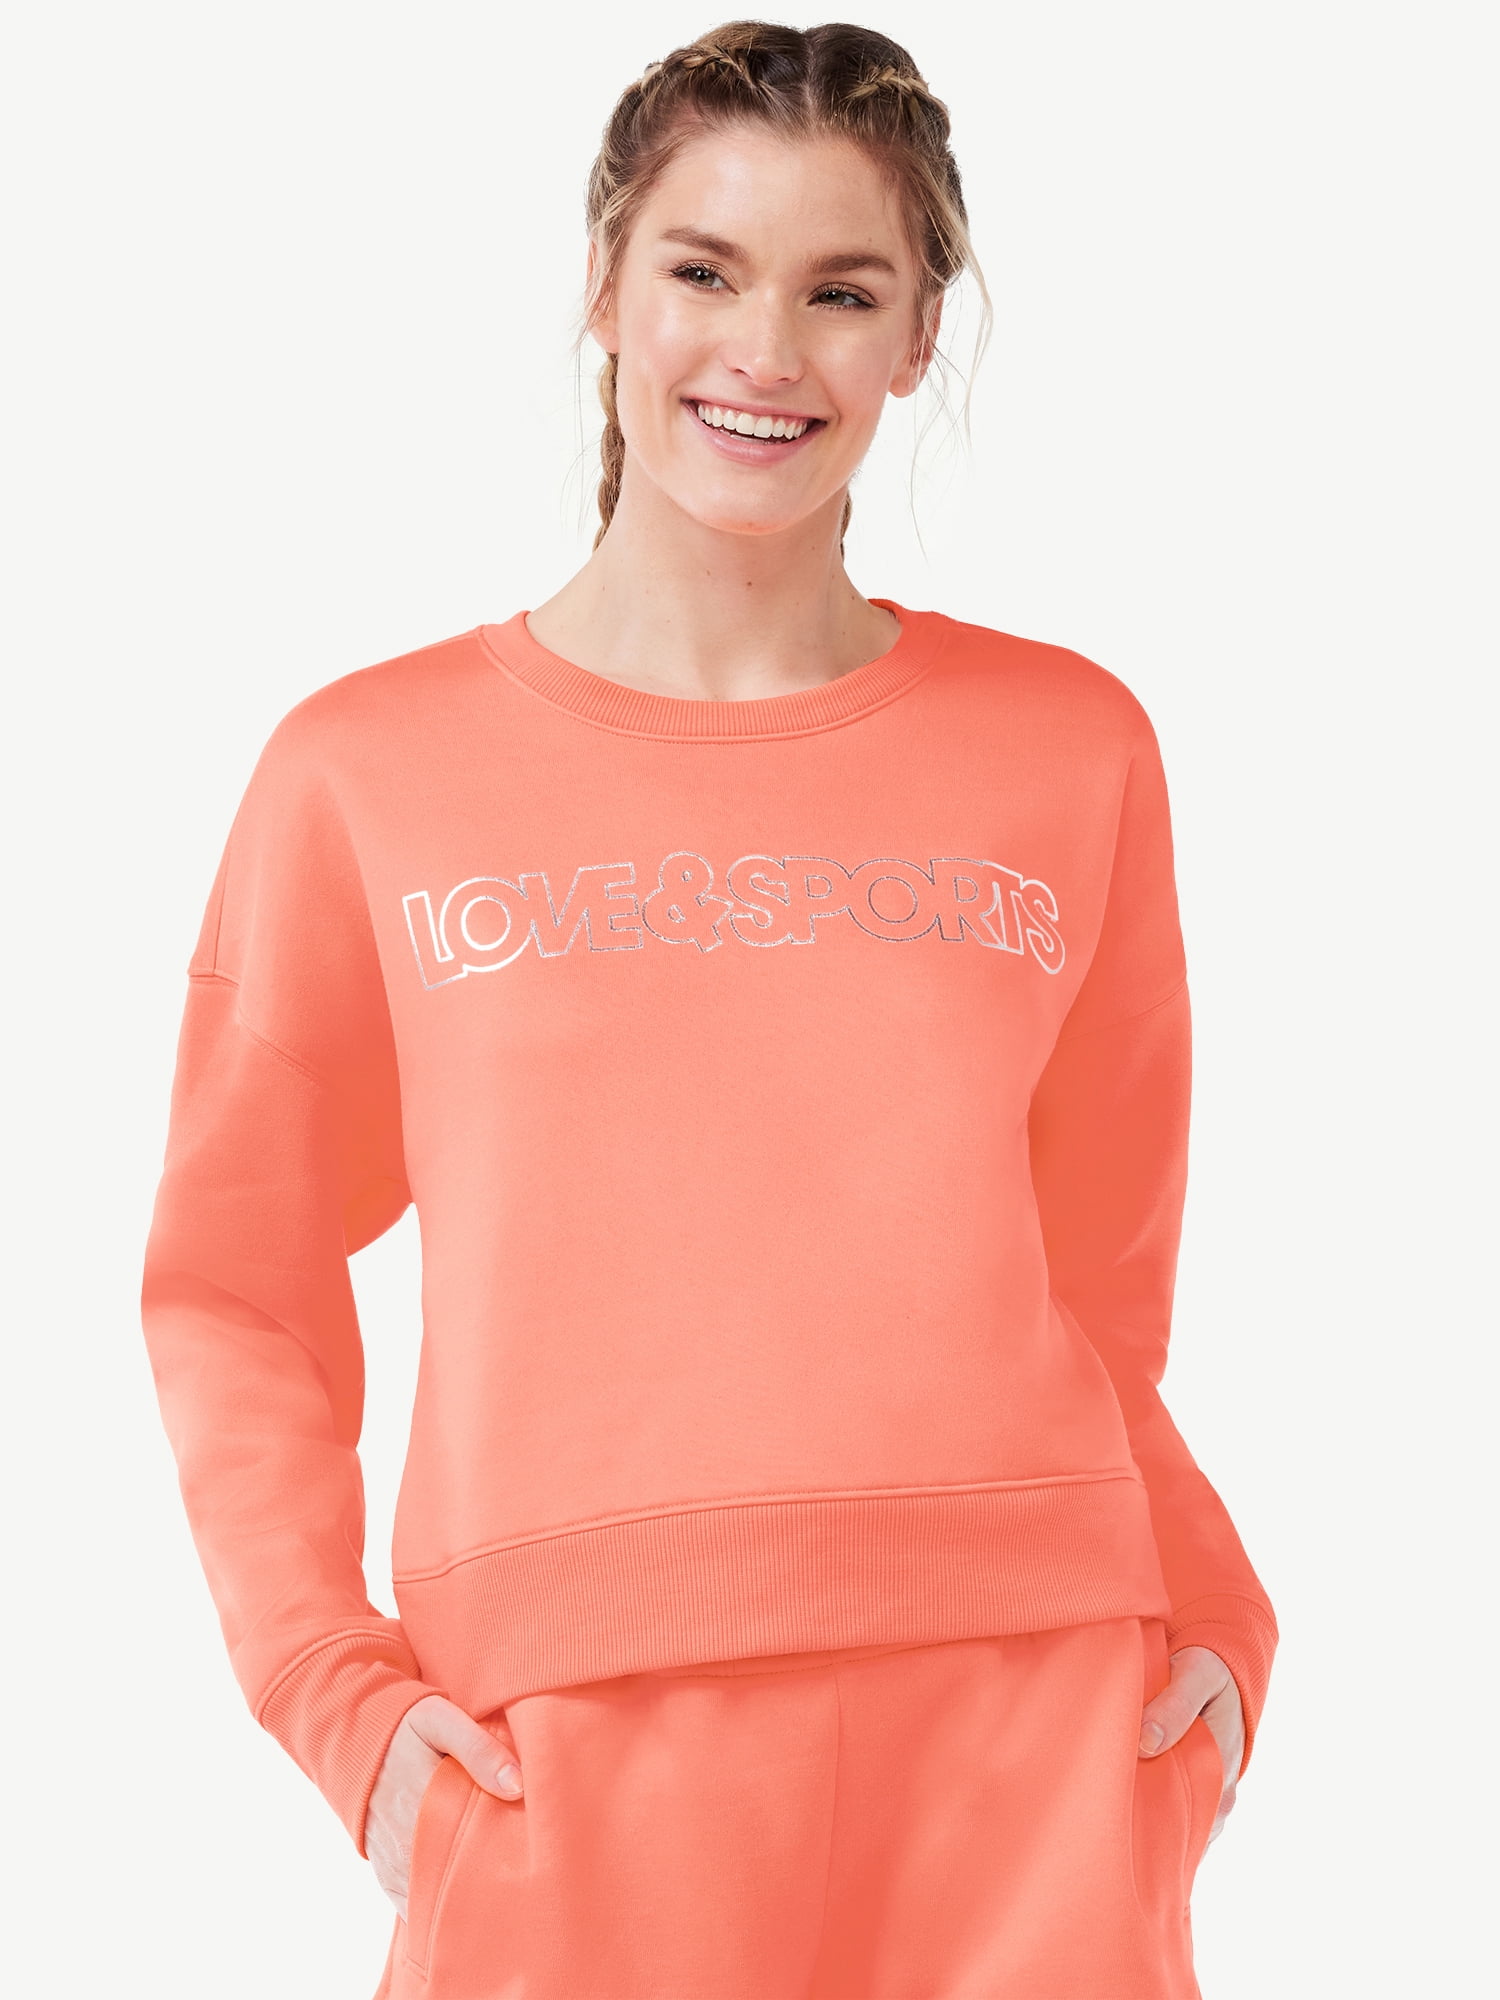 Love & Sports Women's Fleece Logo Sweatshirt - Walmart.com